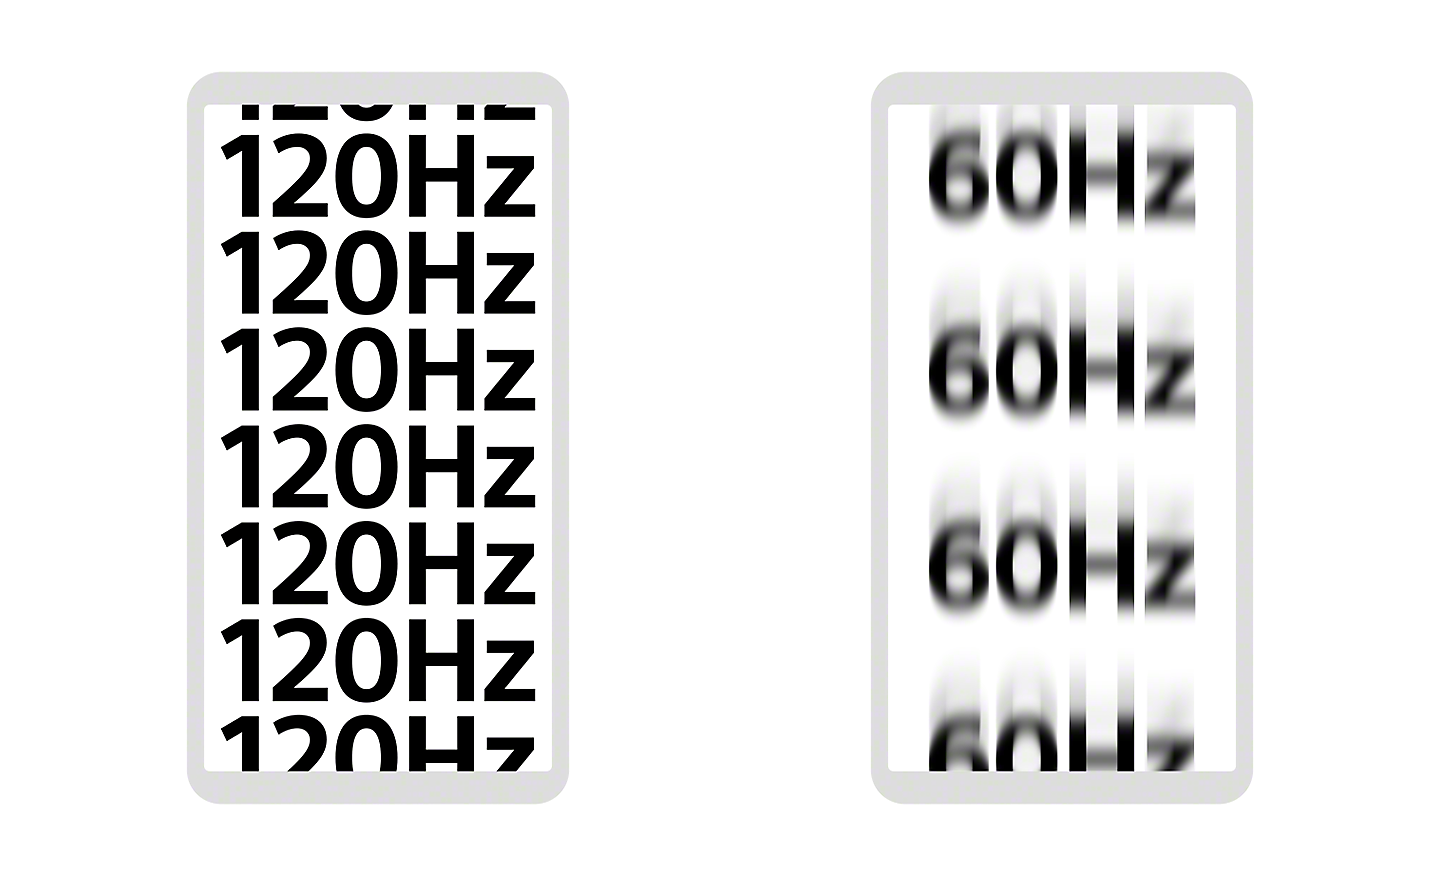 Ilustracija dvaju zaslona pametnih telefona, jedna prikazuje 120 Hz u oštrom fokusu, dok druga prikazuje 60 Hz malo van fokusa